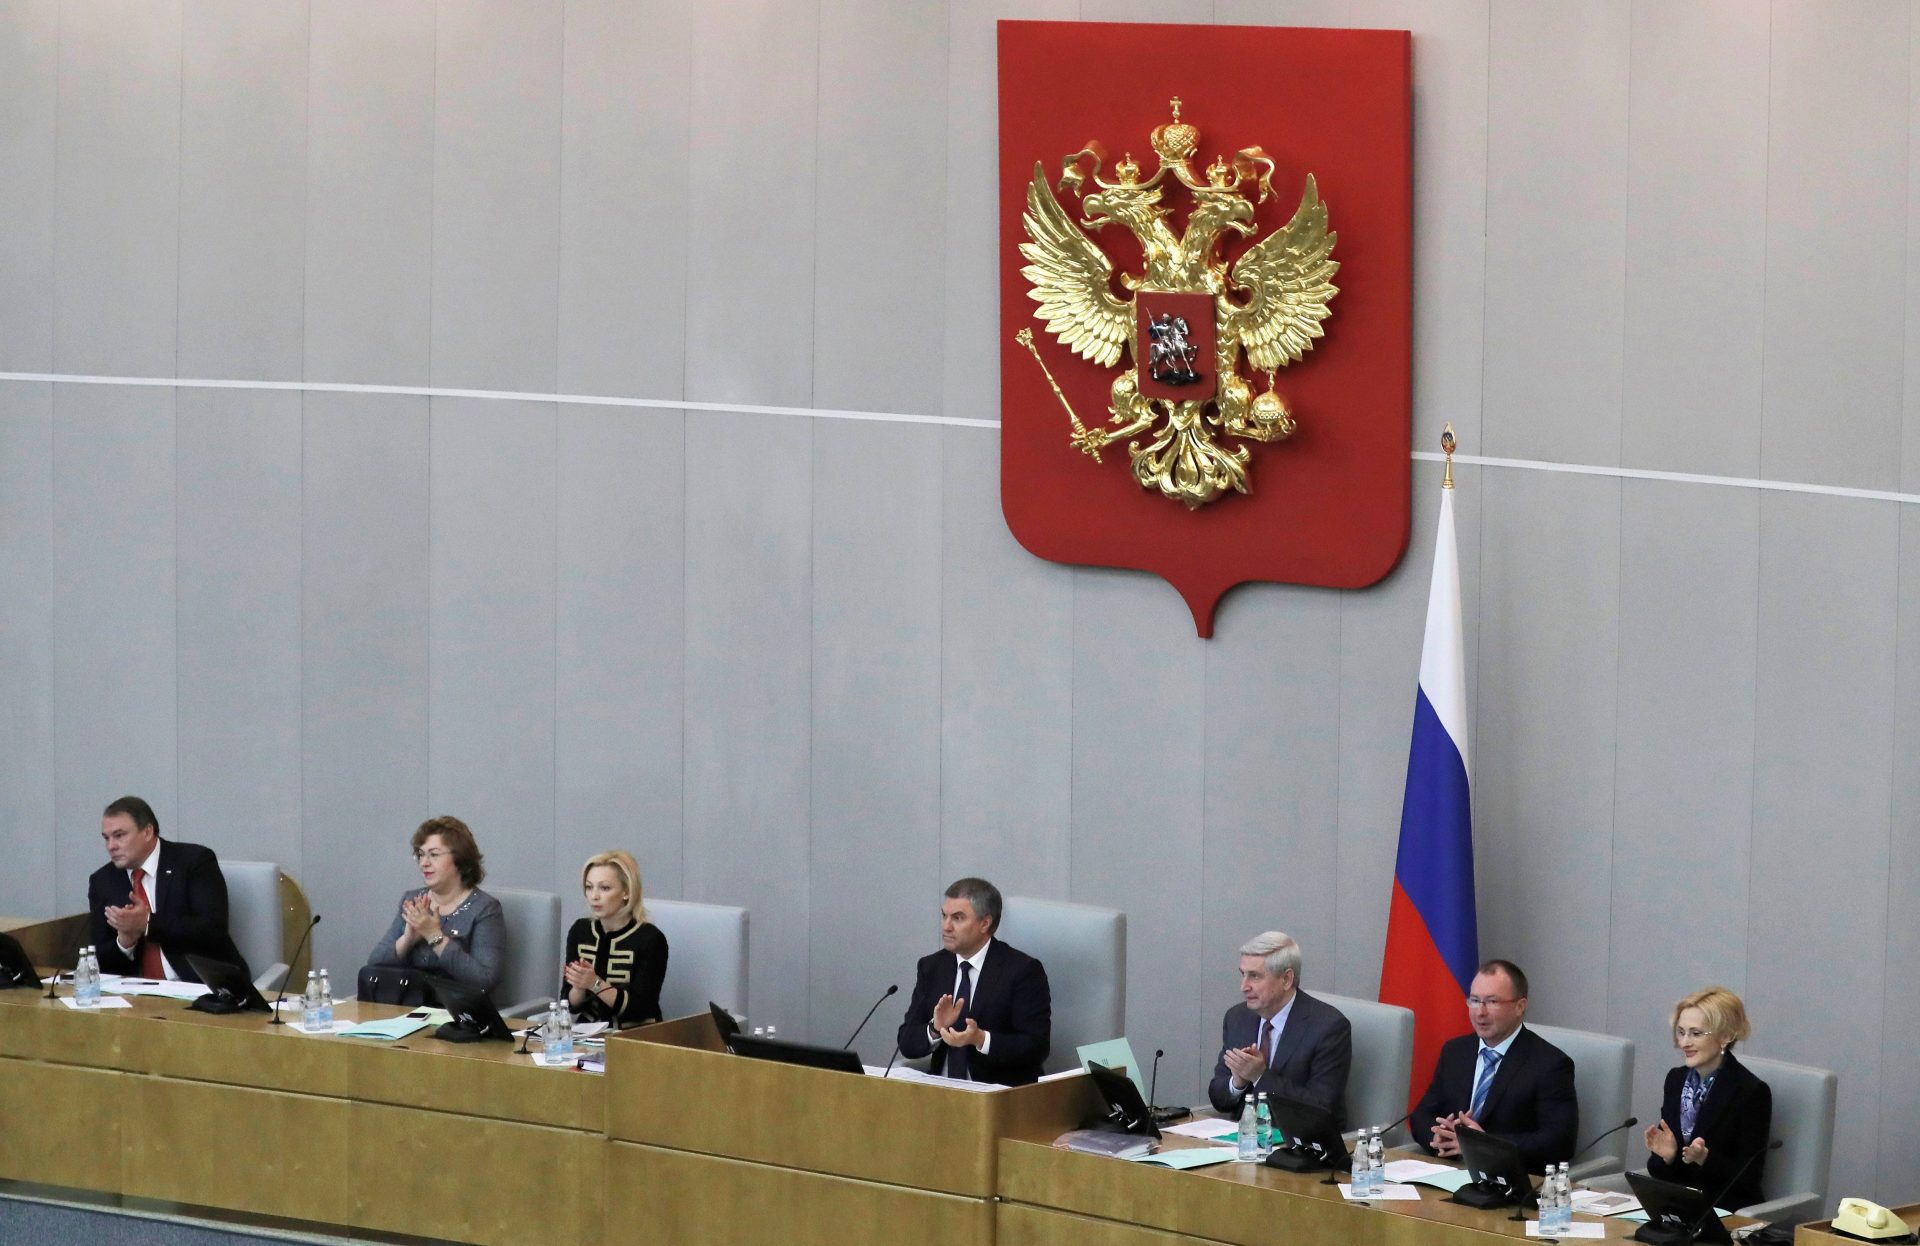 La Duma o cámara de diputados de Rusia